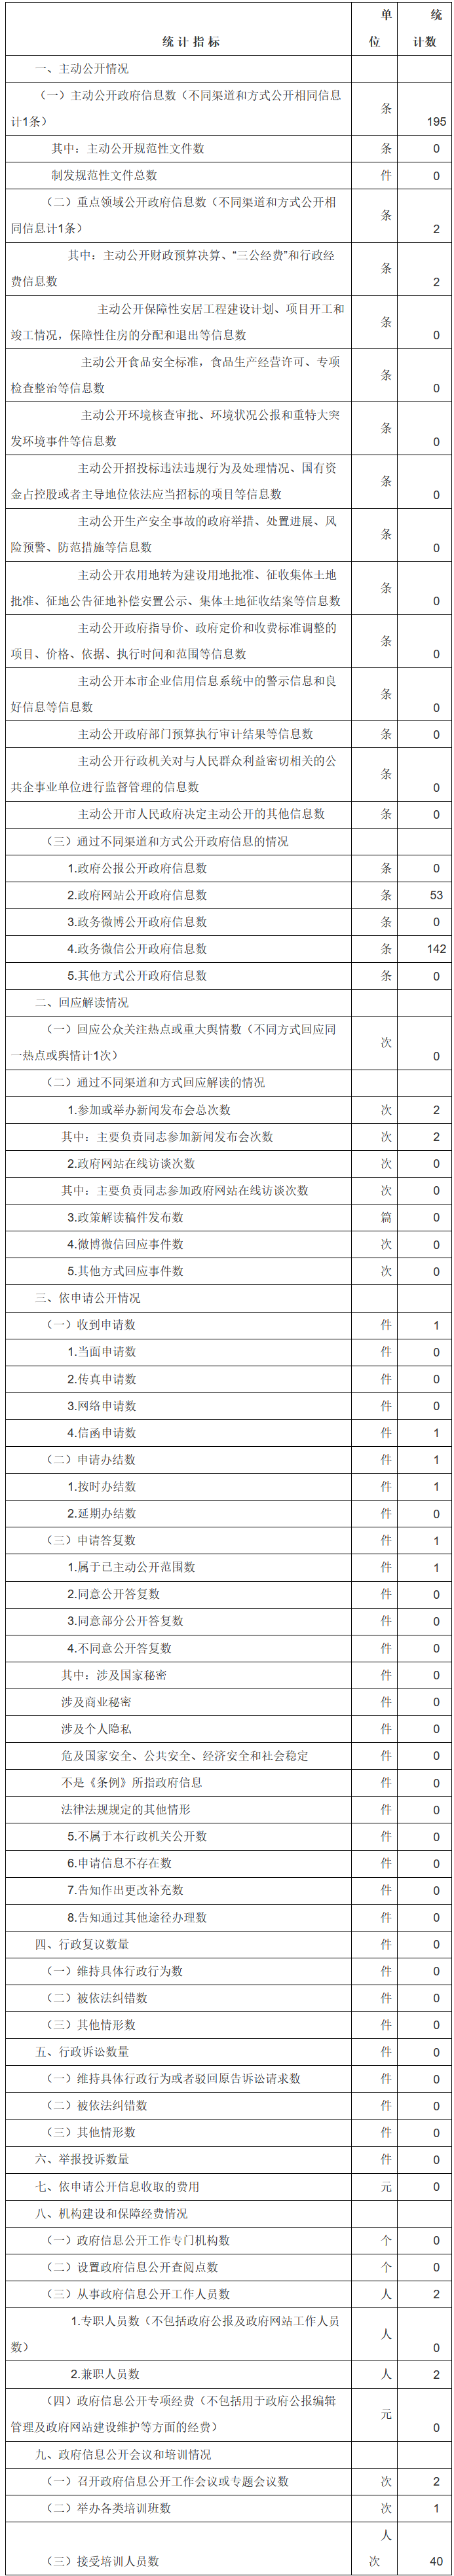 北京市人民政府外事辦公室政府信息公開情況統計表(2017年度)